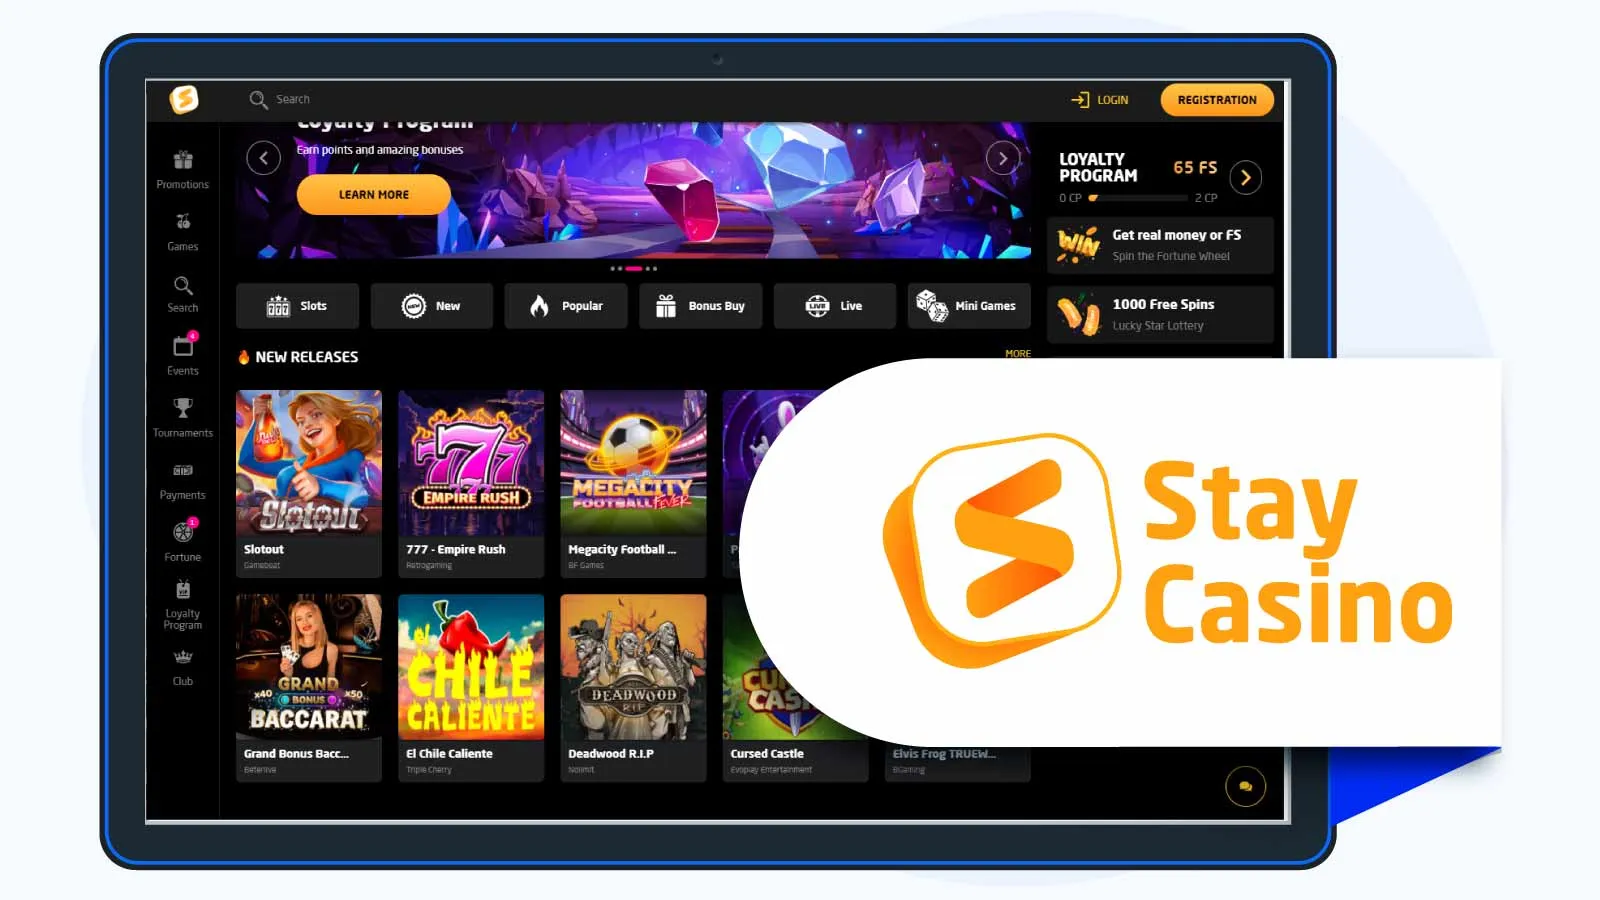 StayCasino Best Casino with No Deposit Free Spins NZ